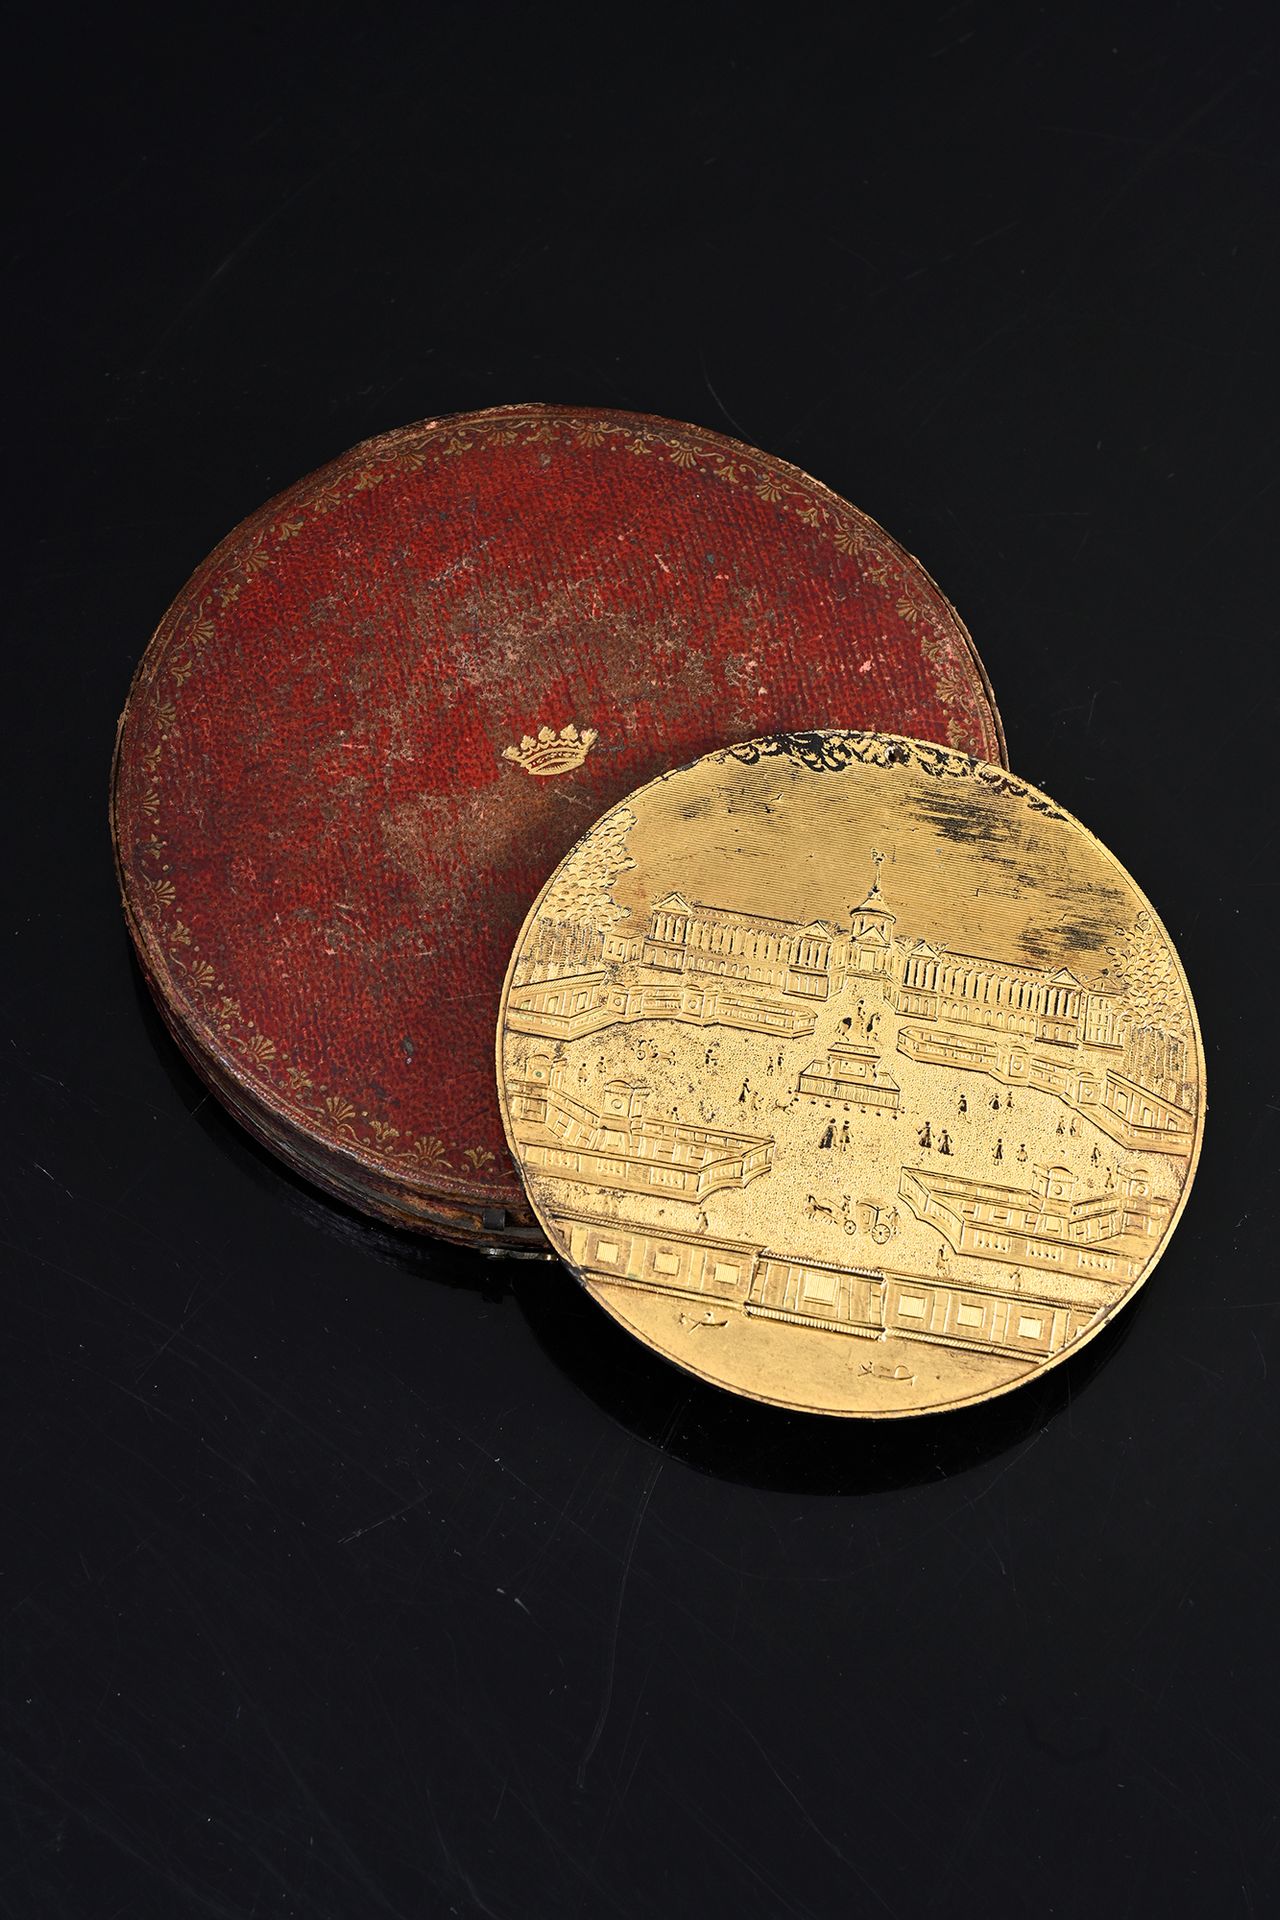 Thomas Compigné 代表路易十五广场的奖章在棕色玳瑁上镀金的锡叶。
在它的红色摩洛哥盒子里，有棕榈叶的鎏金装饰，中间有一个公爵的皇冠。
18世纪中期&hellip;